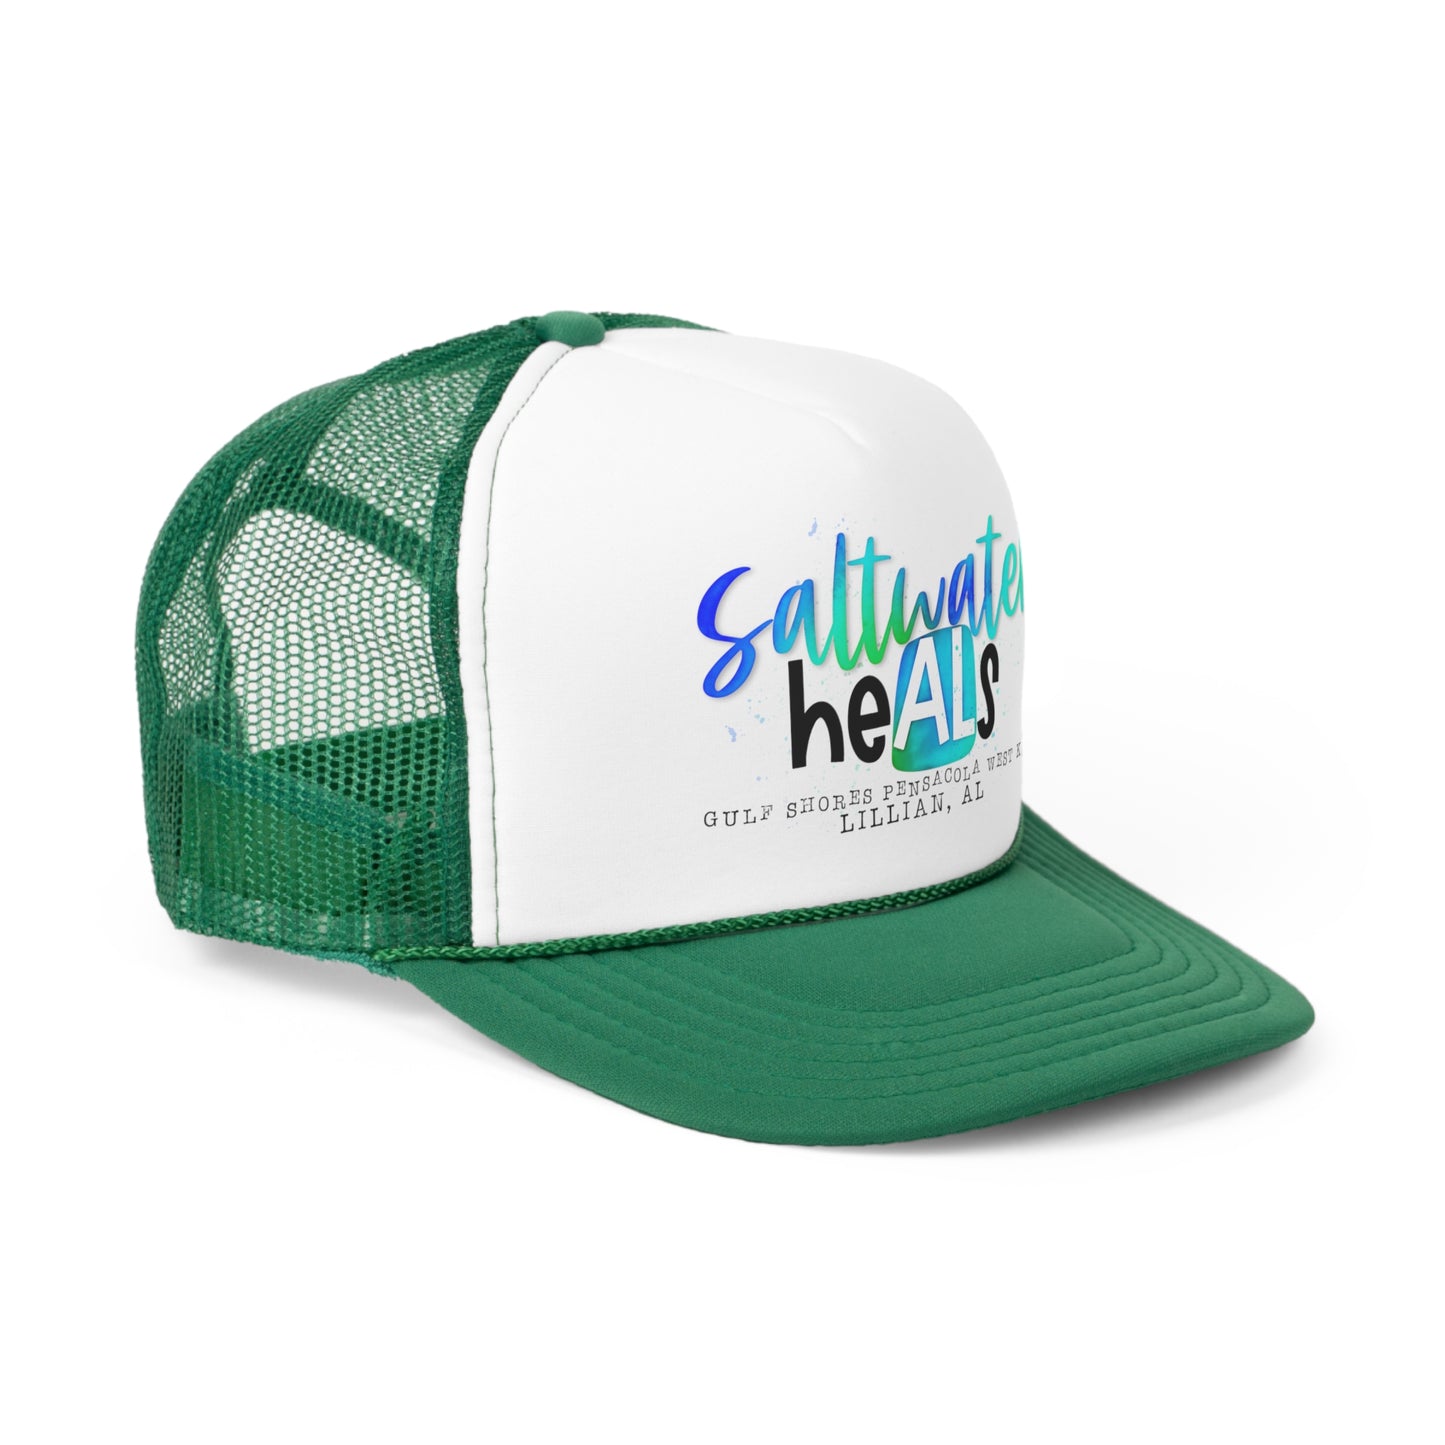 Saltwater Heals- Trucker Caps